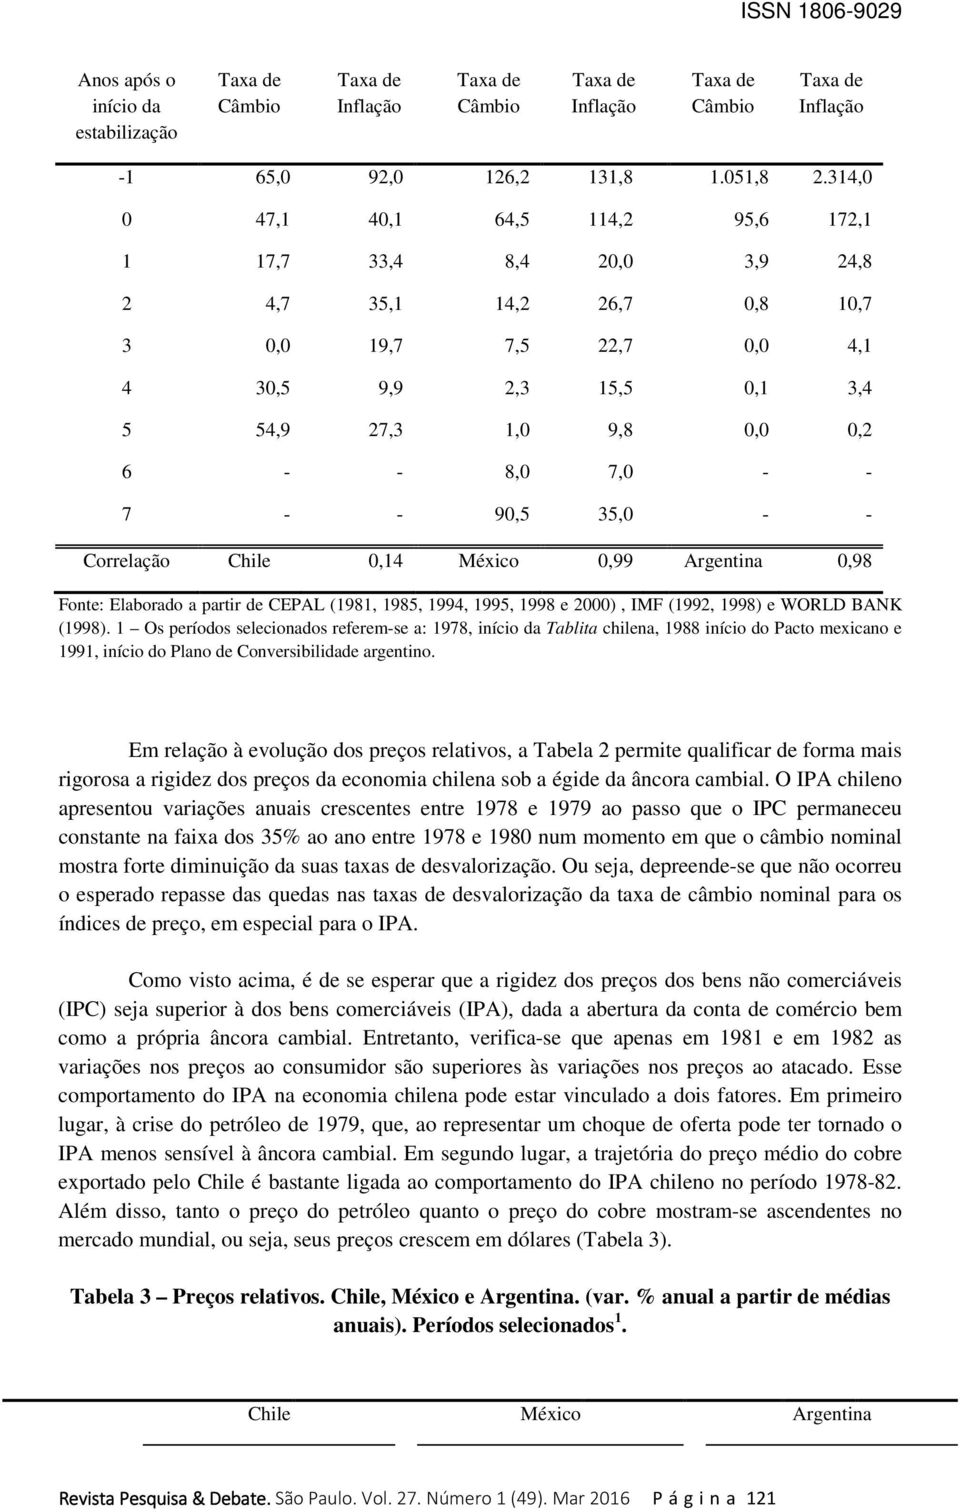 - 7 - - 90,5 35,0 - - Correlação Chile 0,14 México 0,99 Argentina 0,98 Fonte: Elaborado a partir de CEPAL (1981, 1985, 1994, 1995, 1998 e 2000), IMF (1992, 1998) e WORLD BANK (1998).